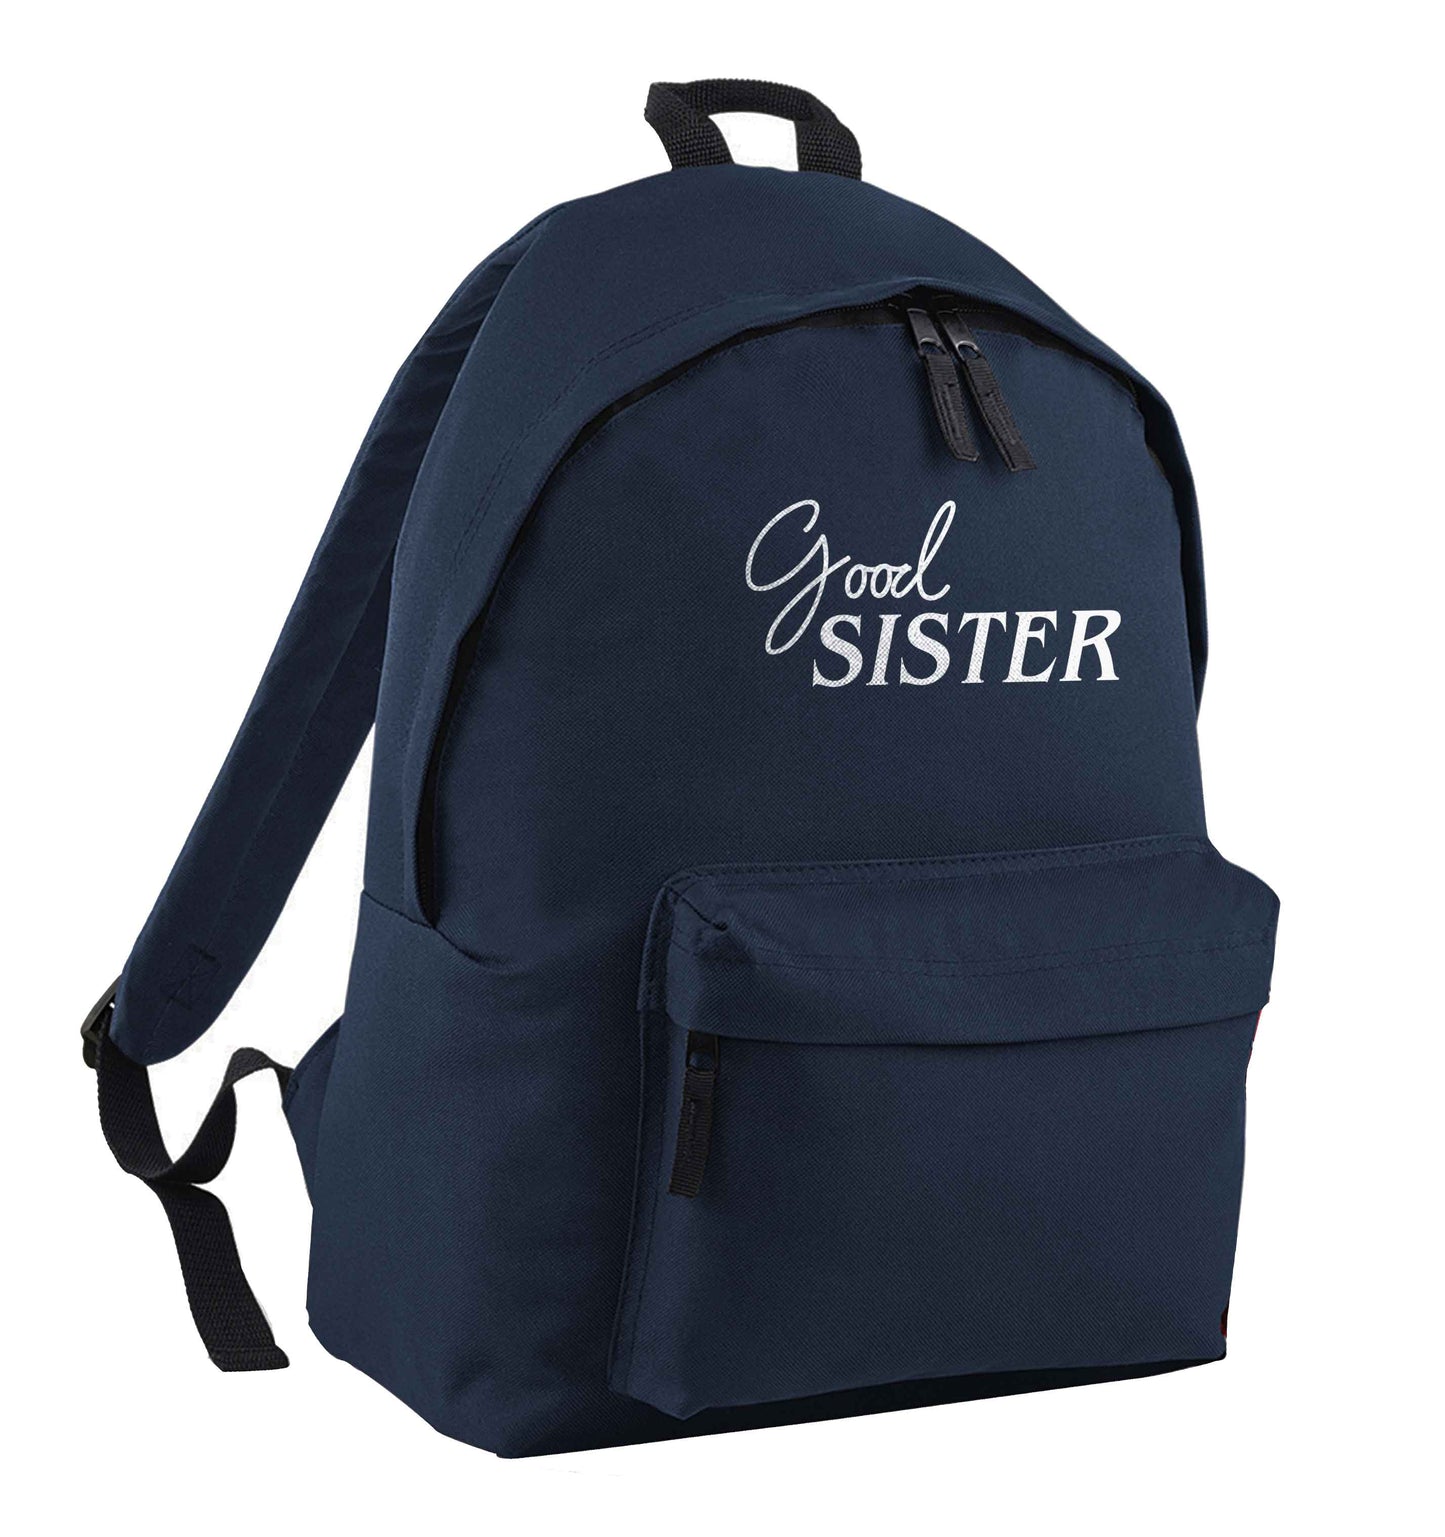 Good sister navy children's backpack